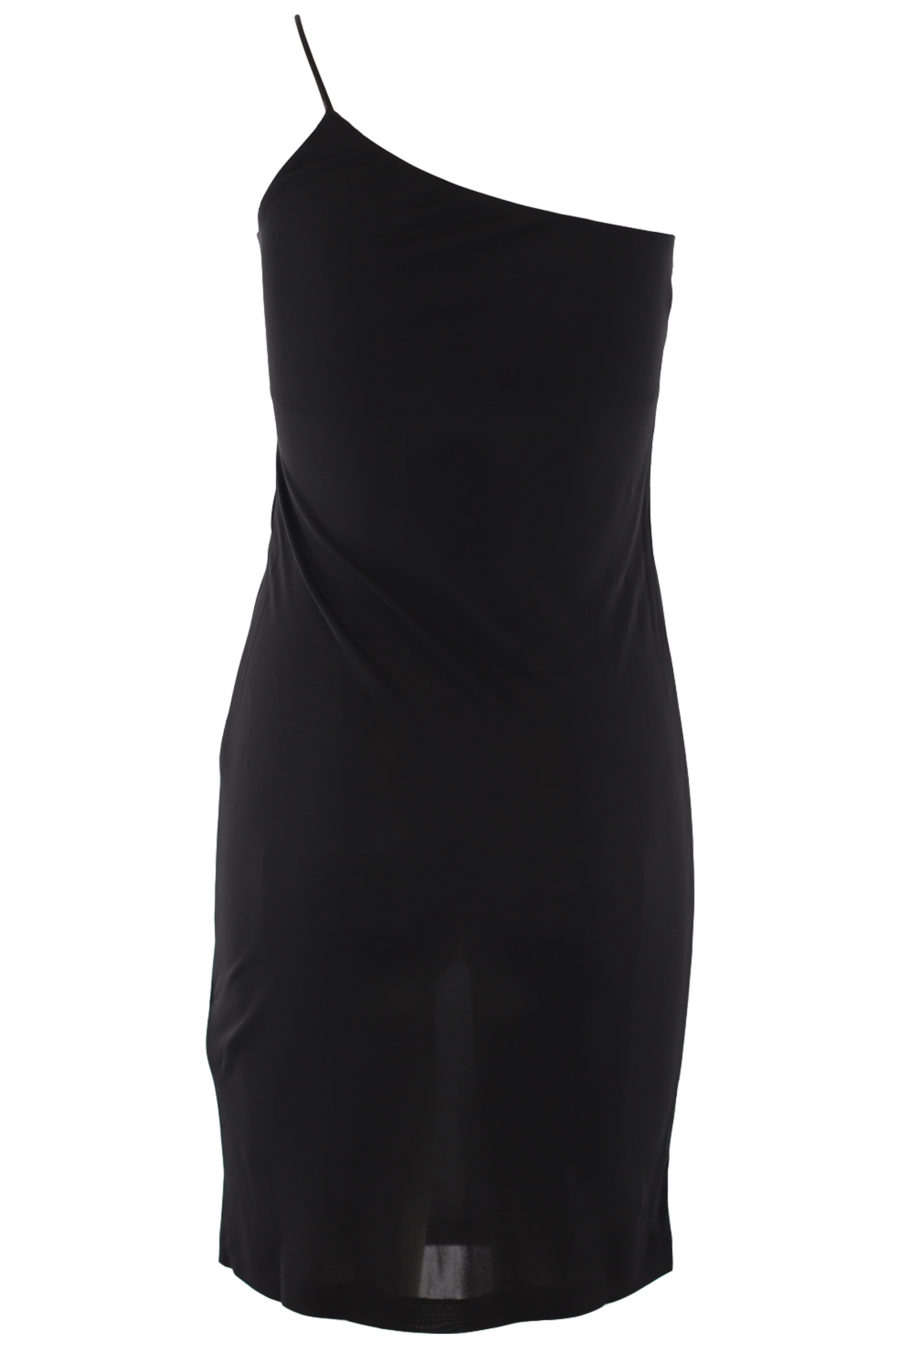 Asymmetrisches schwarzes Kleid - IMG 0730